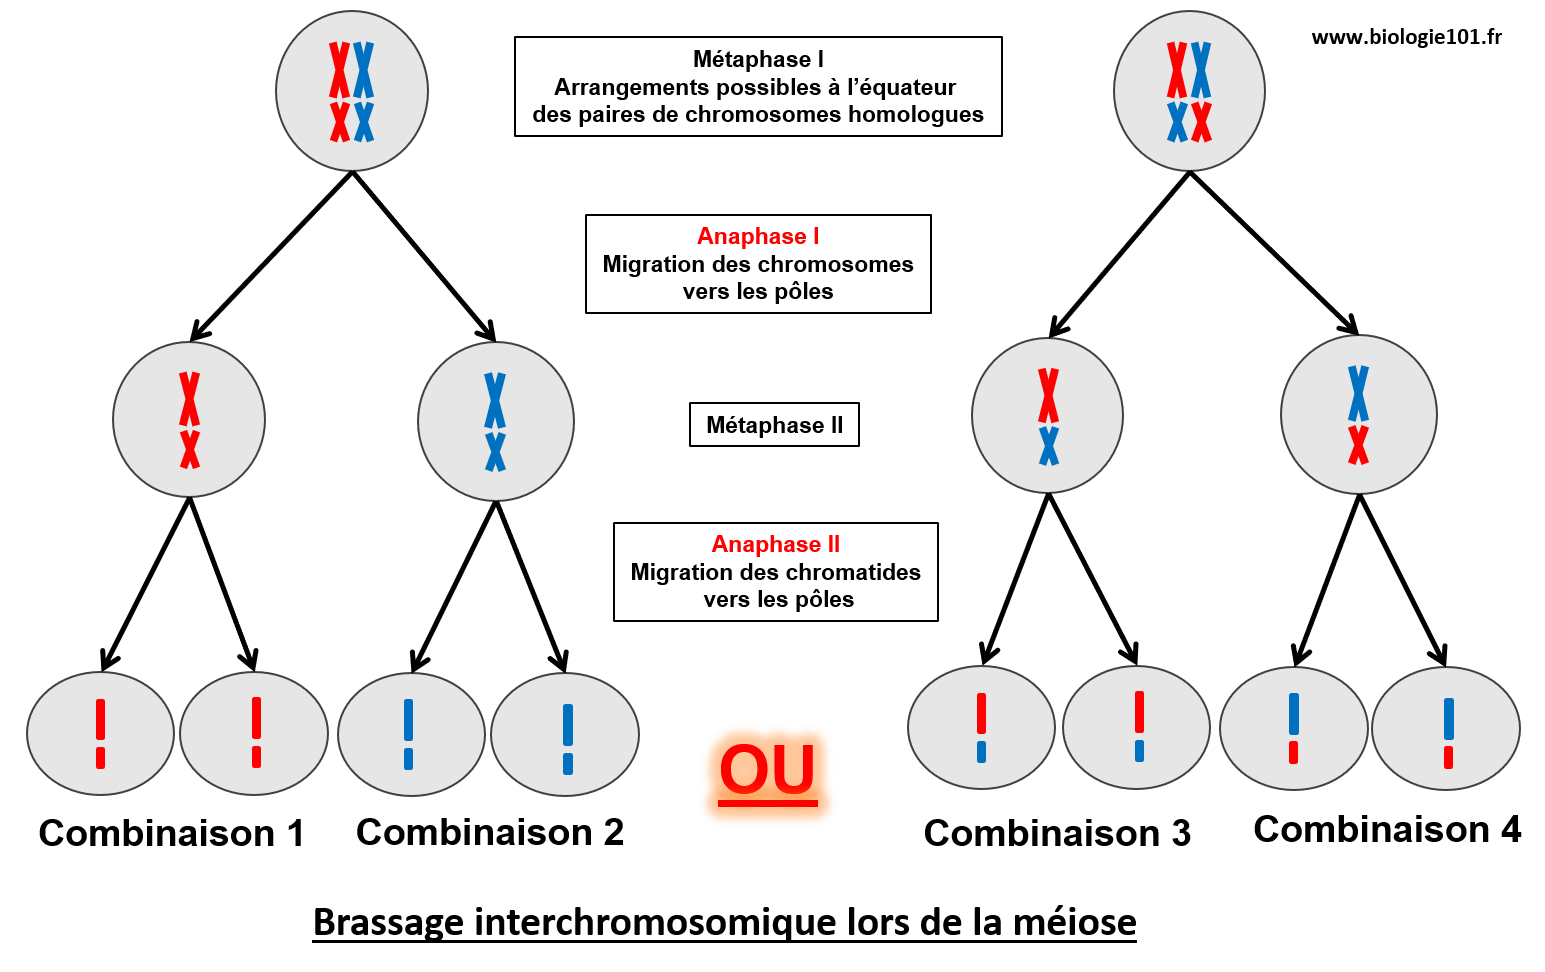 Le brassage interchromosomique a lieu lors de la métaphase I de la méiose.